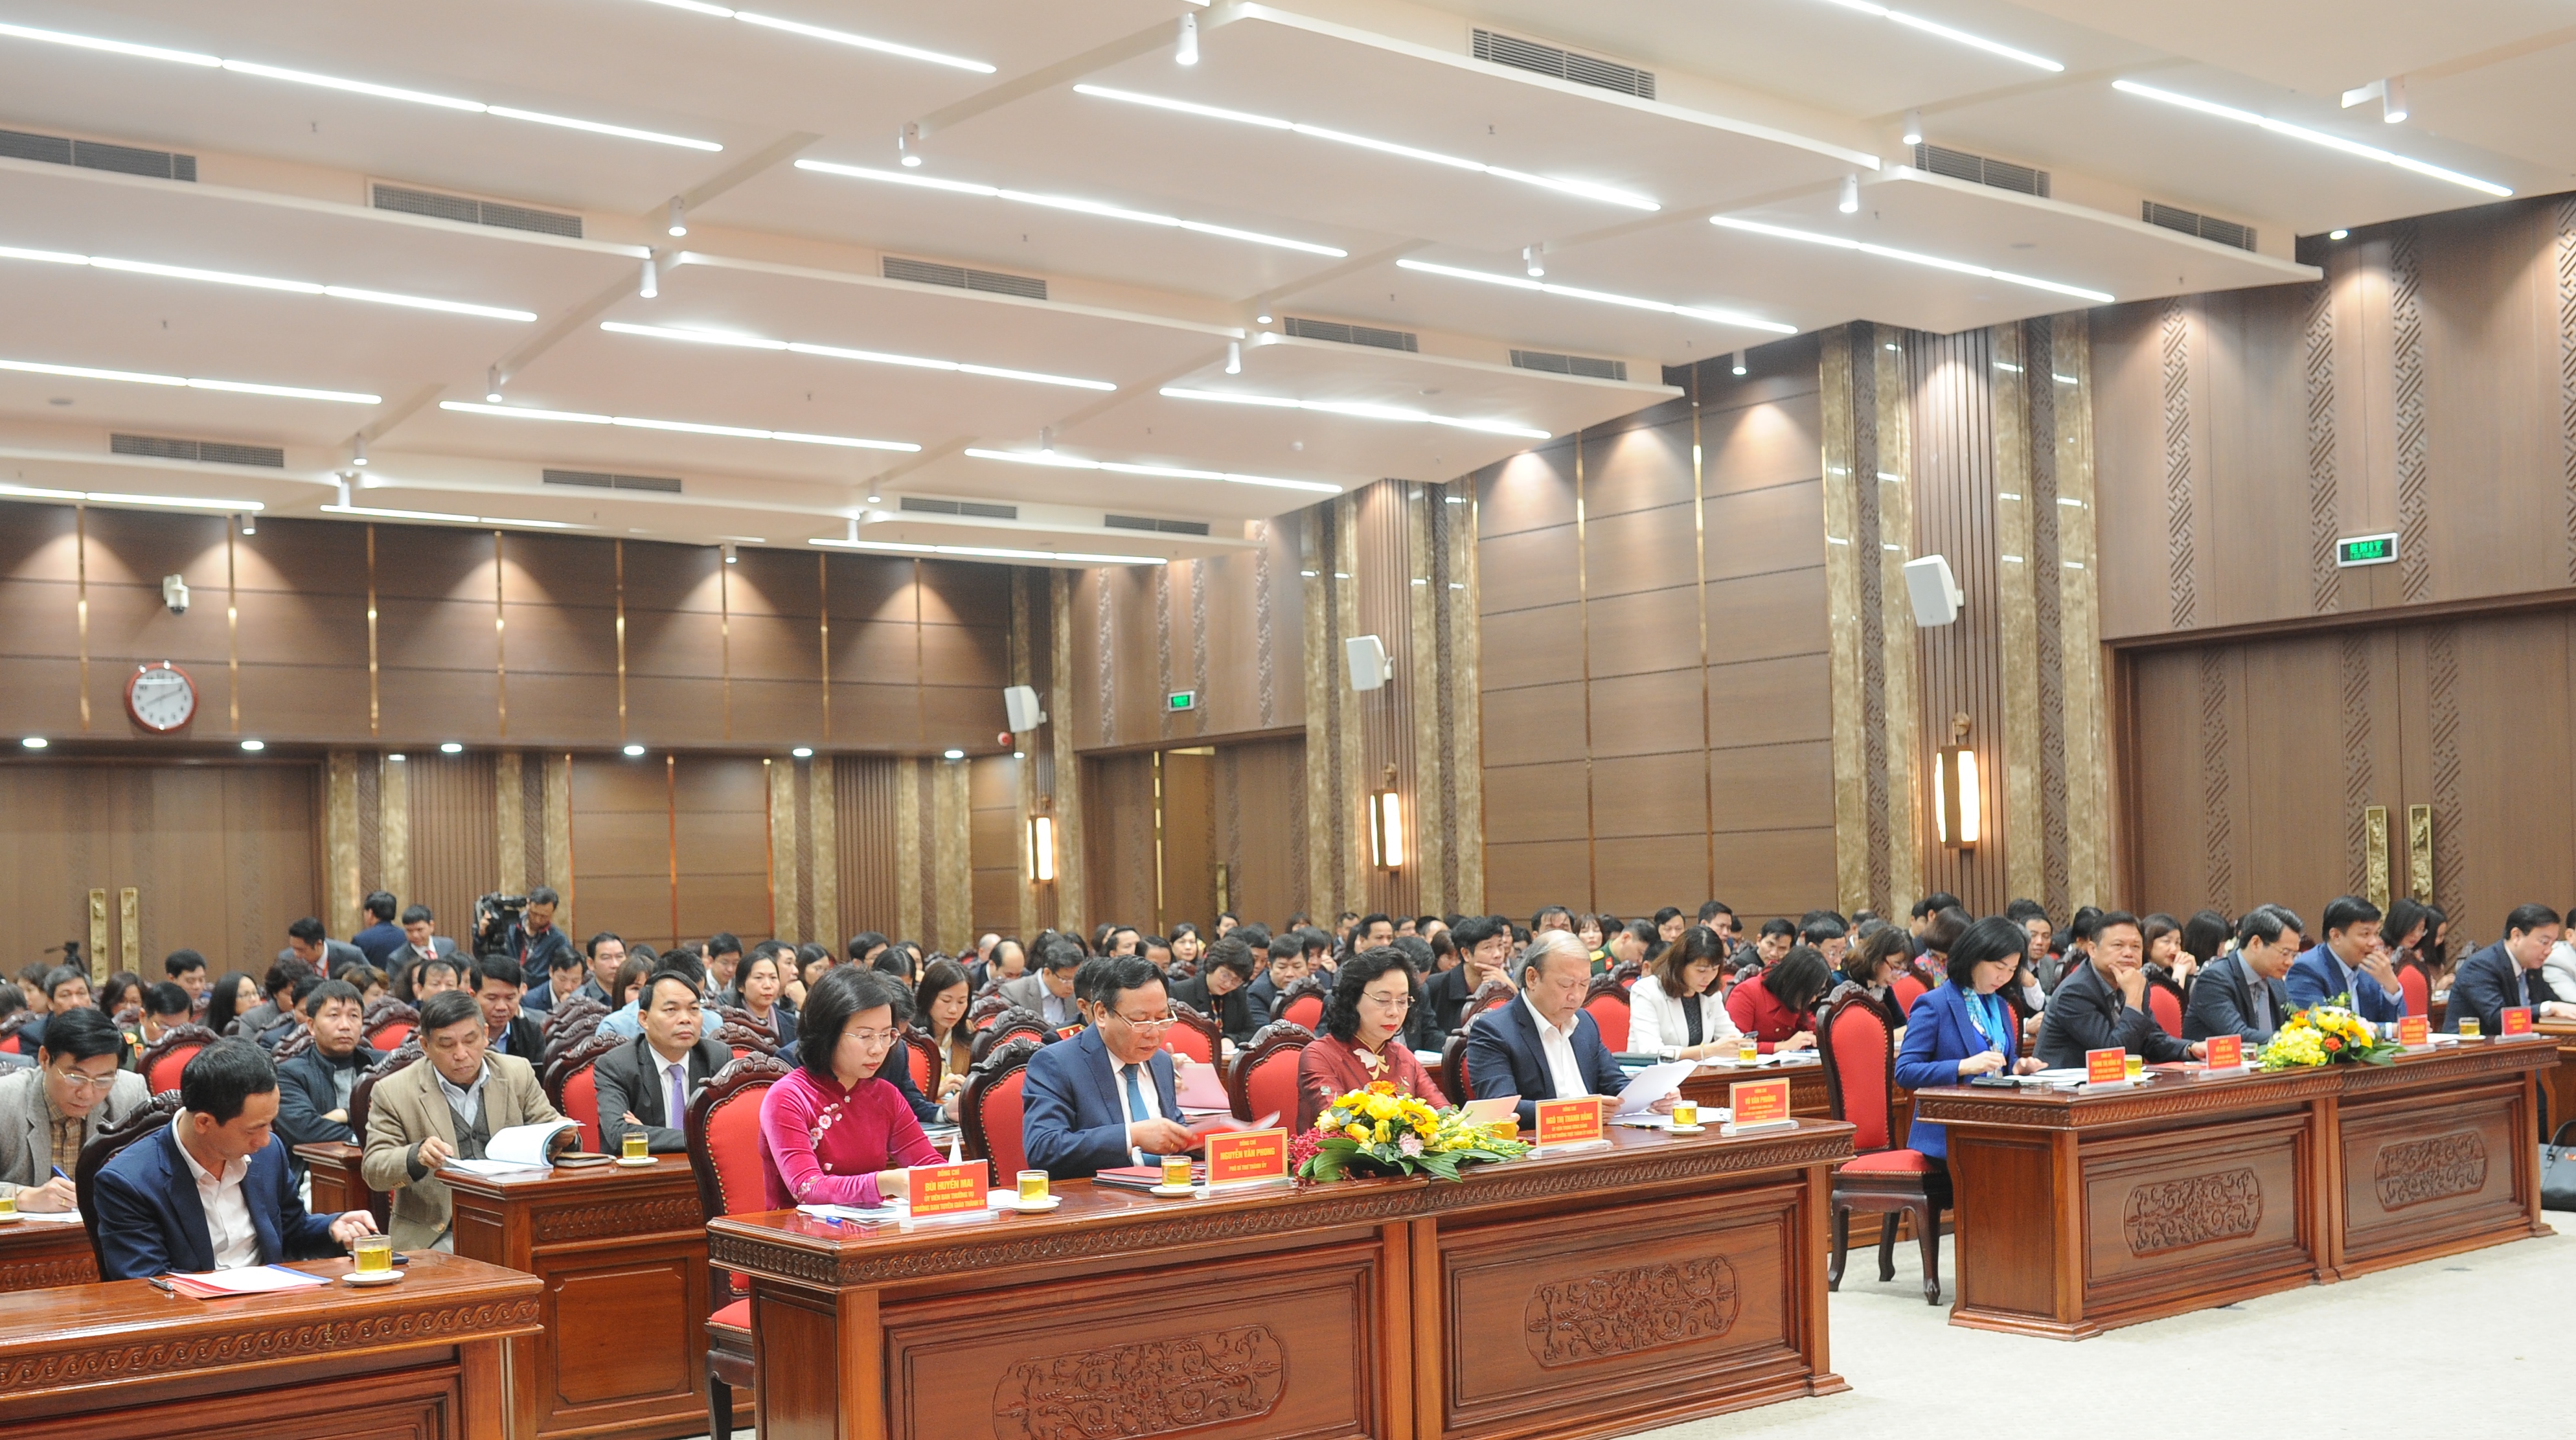 Hà Nội: Hội nghị tổng kết công tác Tuyên giáo năm 2020 - Triển khai nhiệm vụ, phương hướng năm 2021